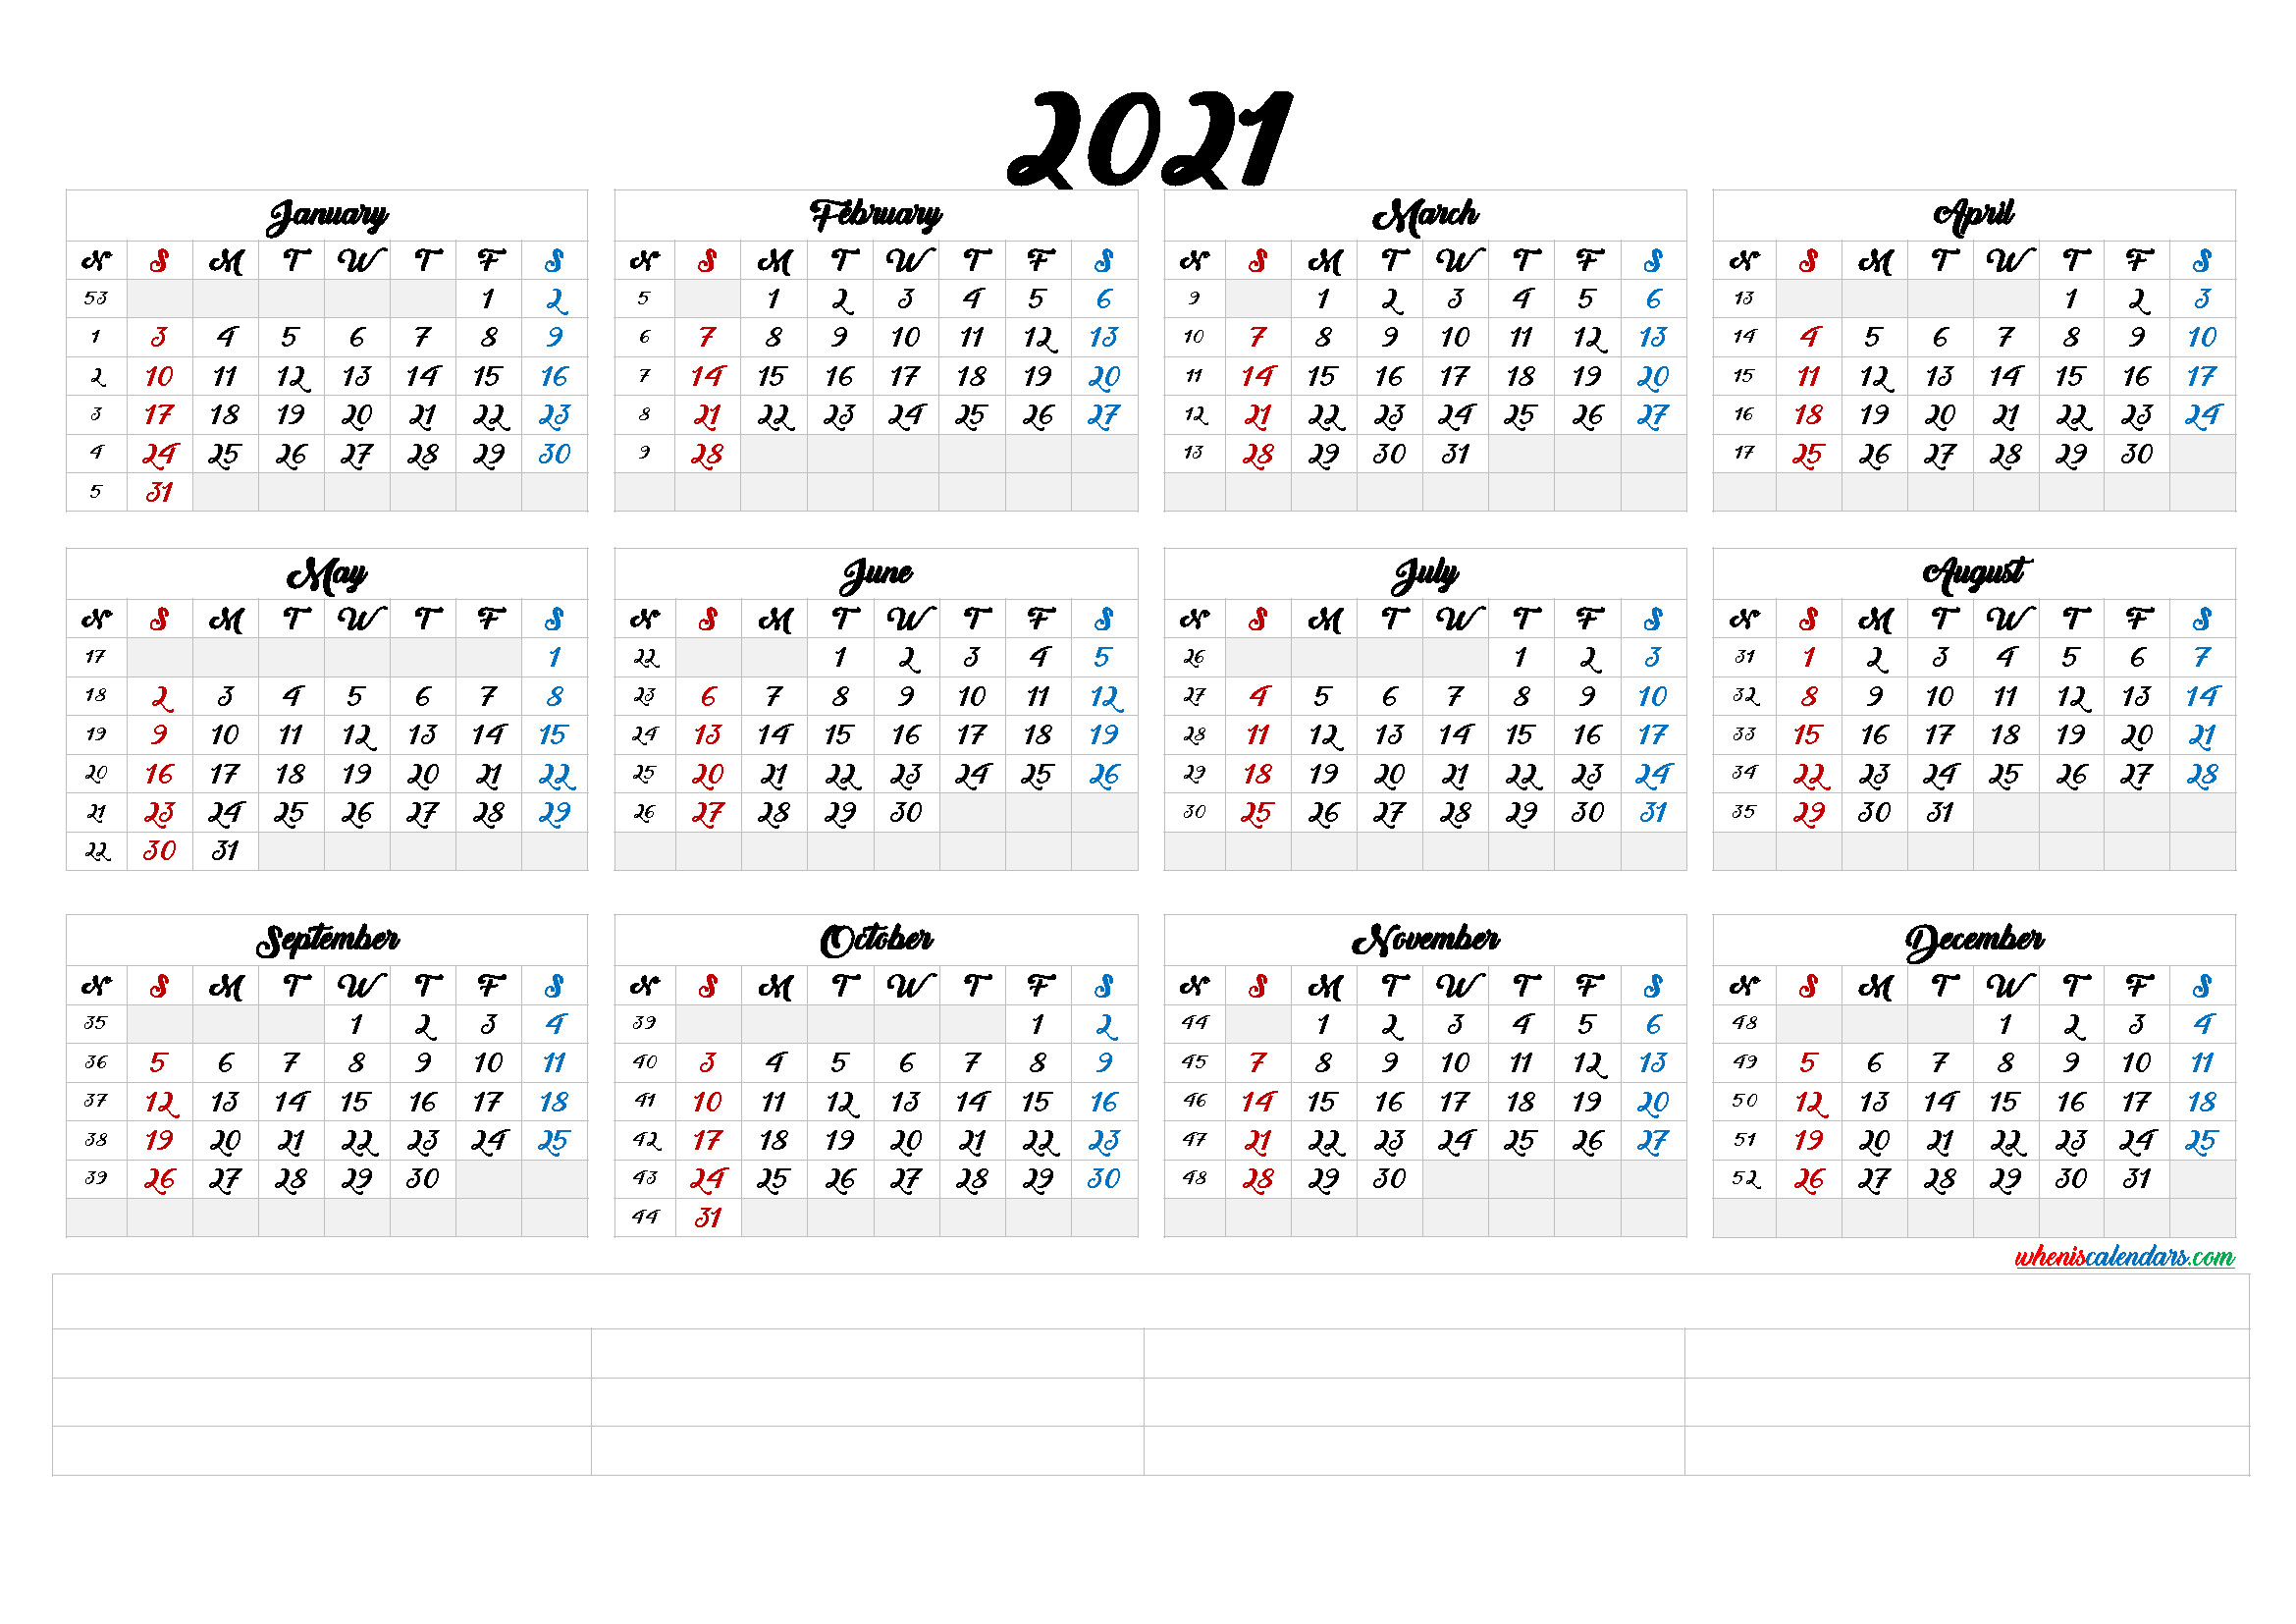 2021 Calendar With Week Number Printable Free : 2021-2021 Yearly Calendar Printable Free